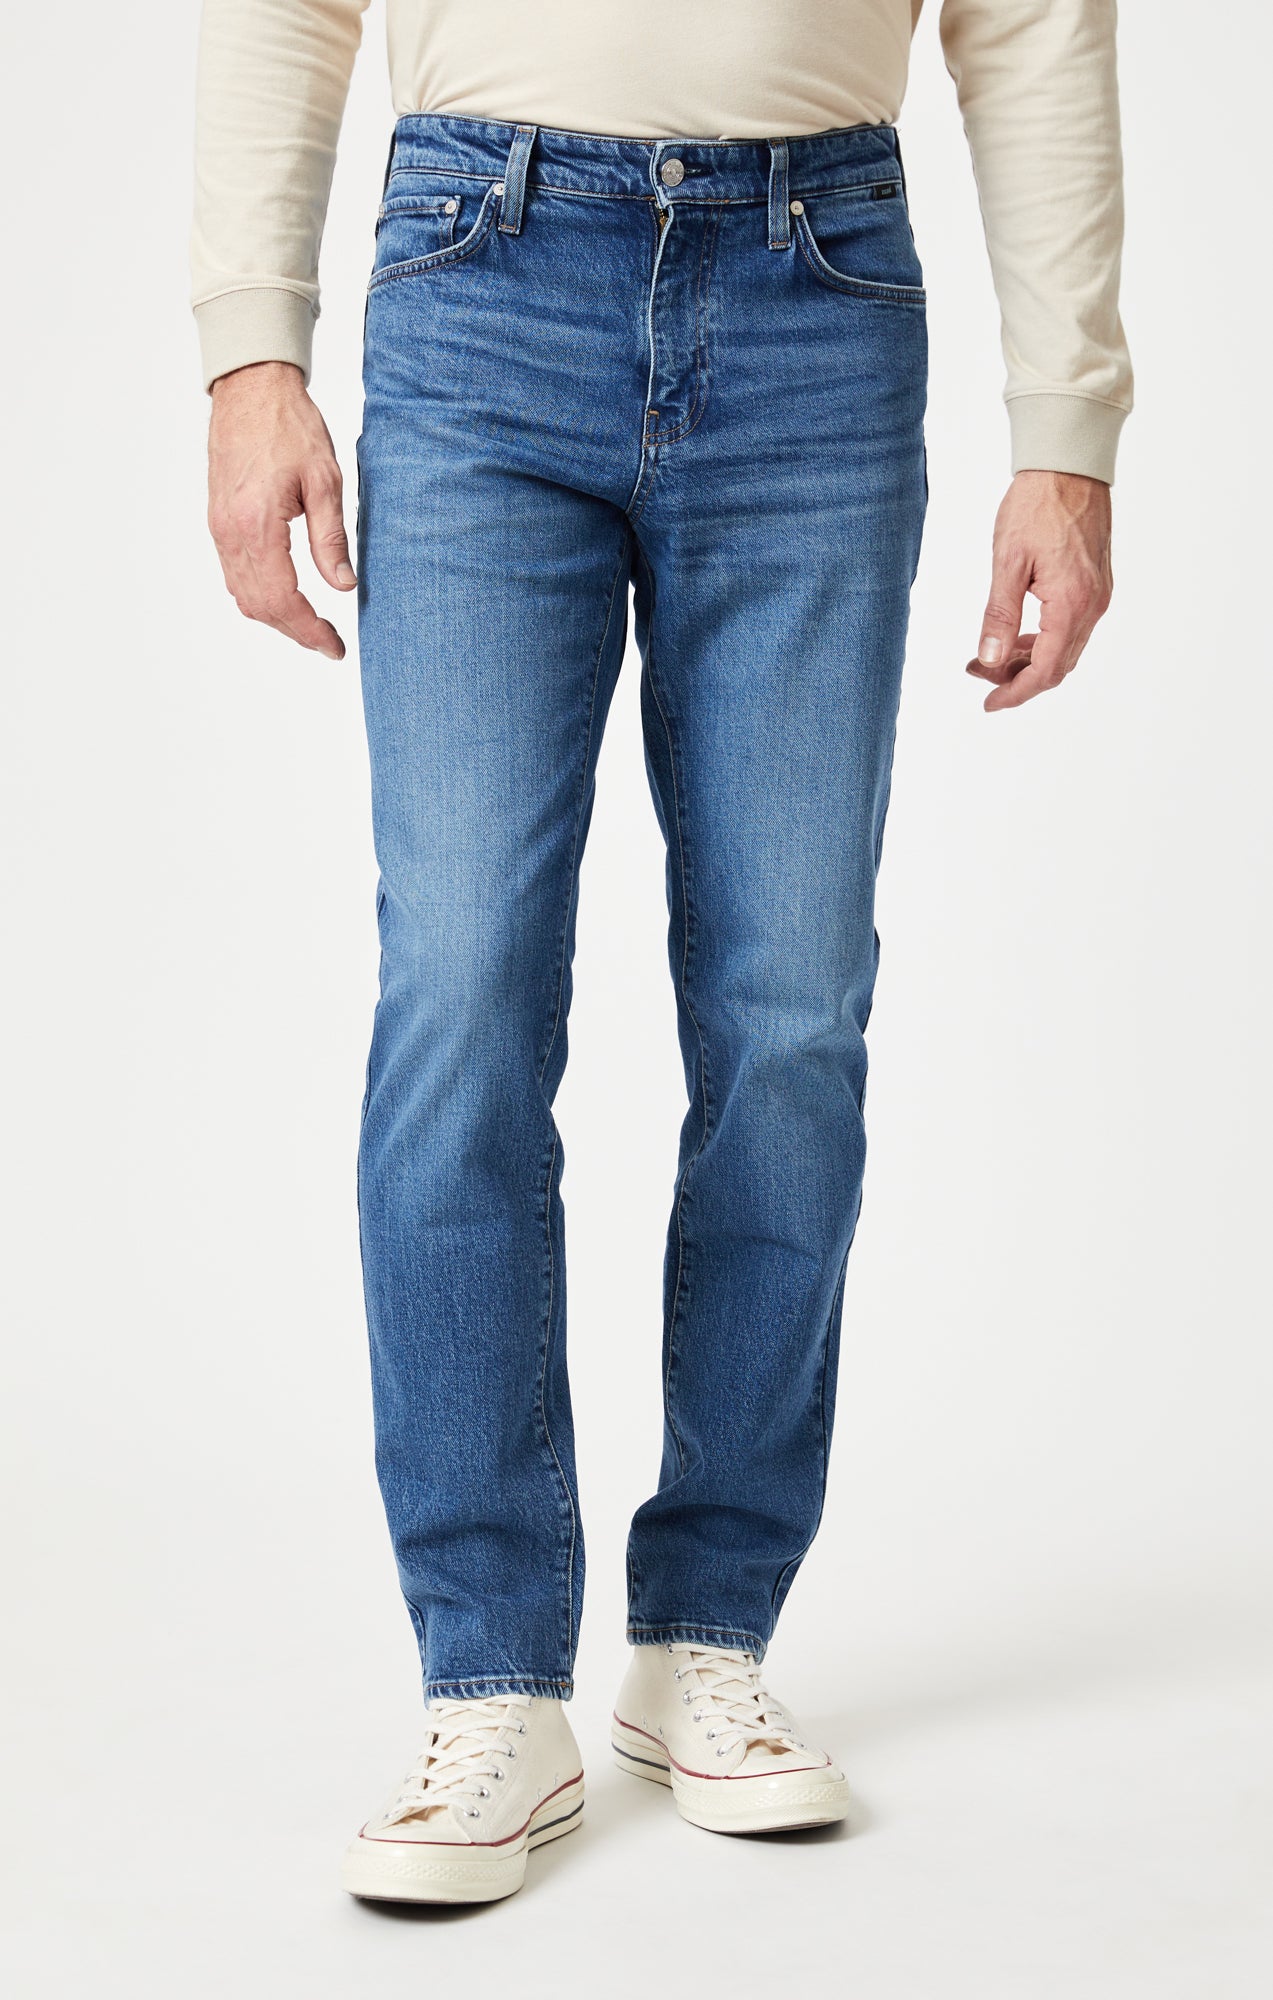 Mavi Men's Steve Athletic Fit Jeans In Dark Smoke Organic Vintage